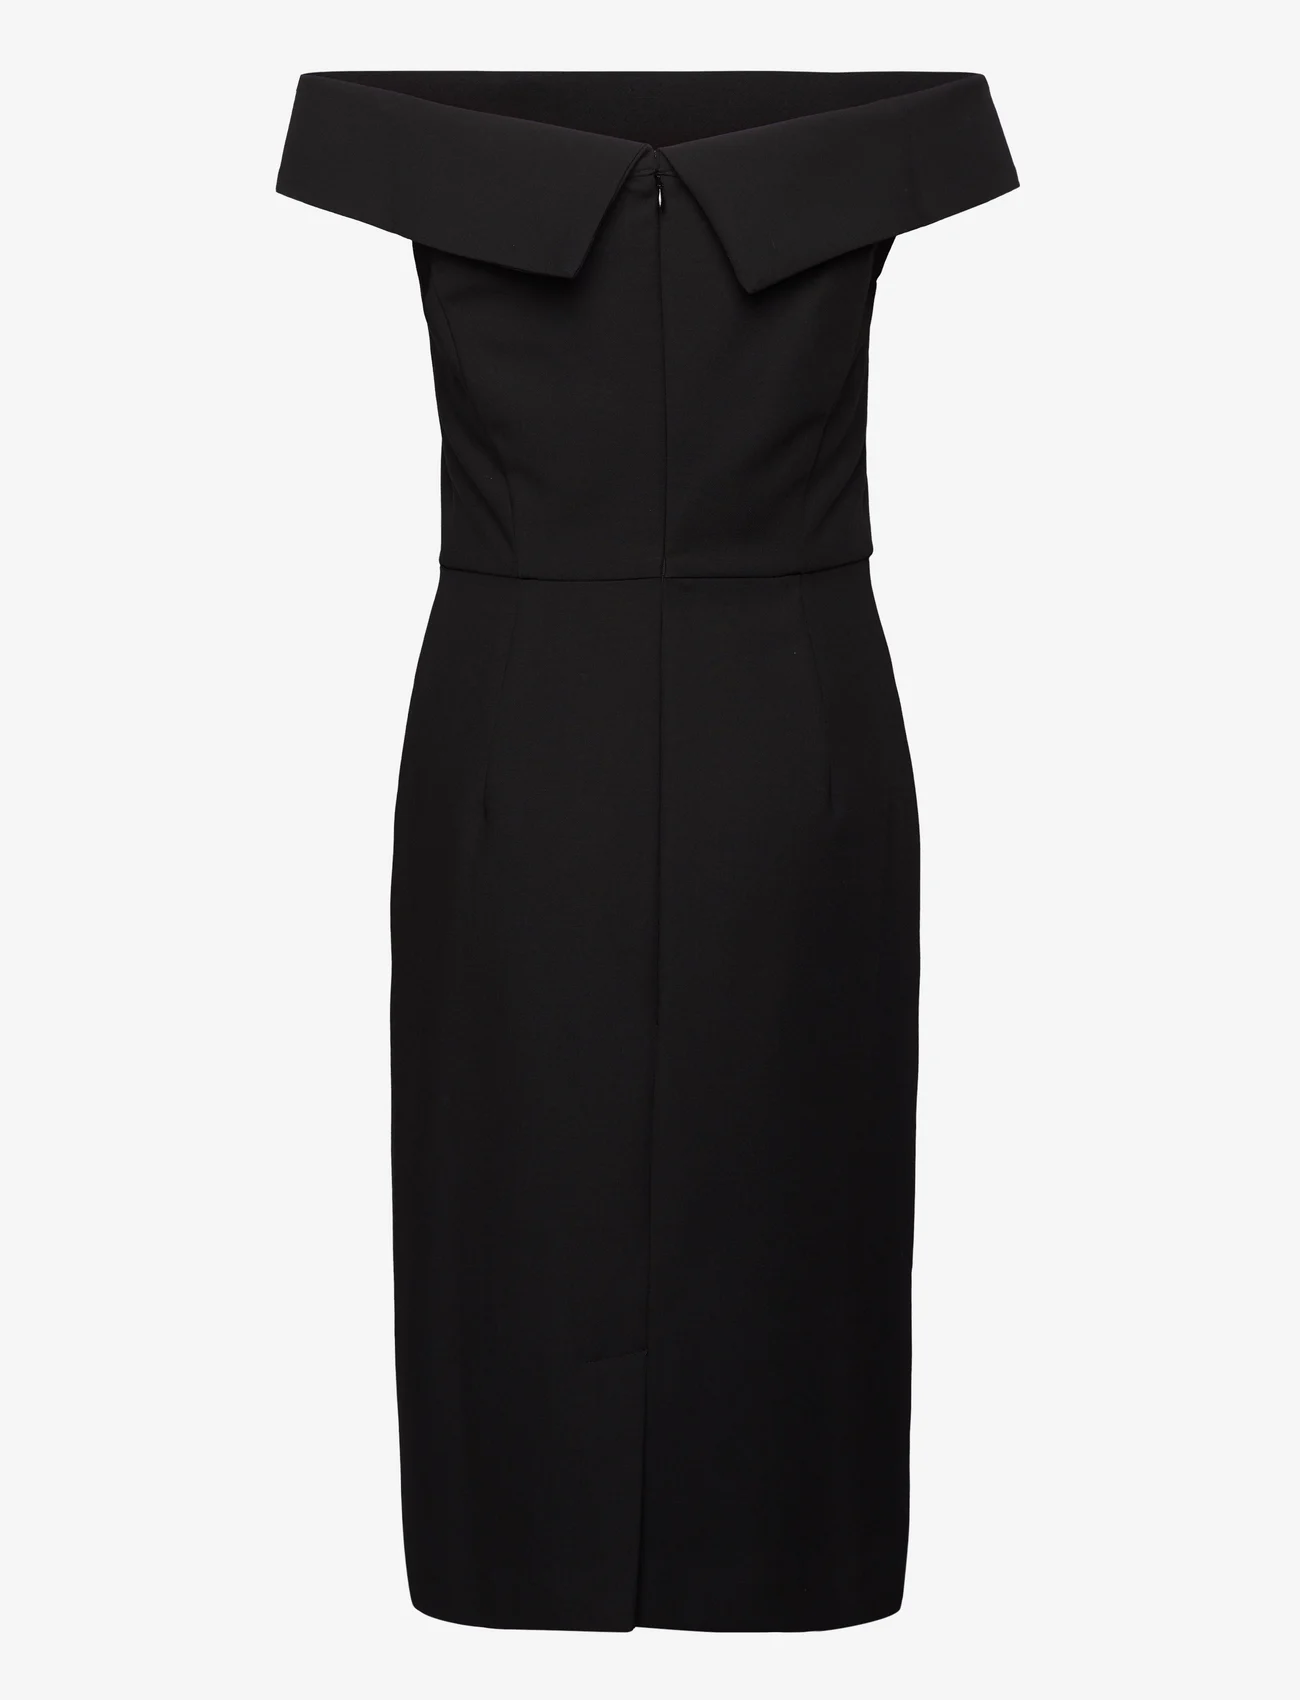 IVY OAK - CARMEN COCKTAIL DRESS - festkläder till outletpriser - black - 1